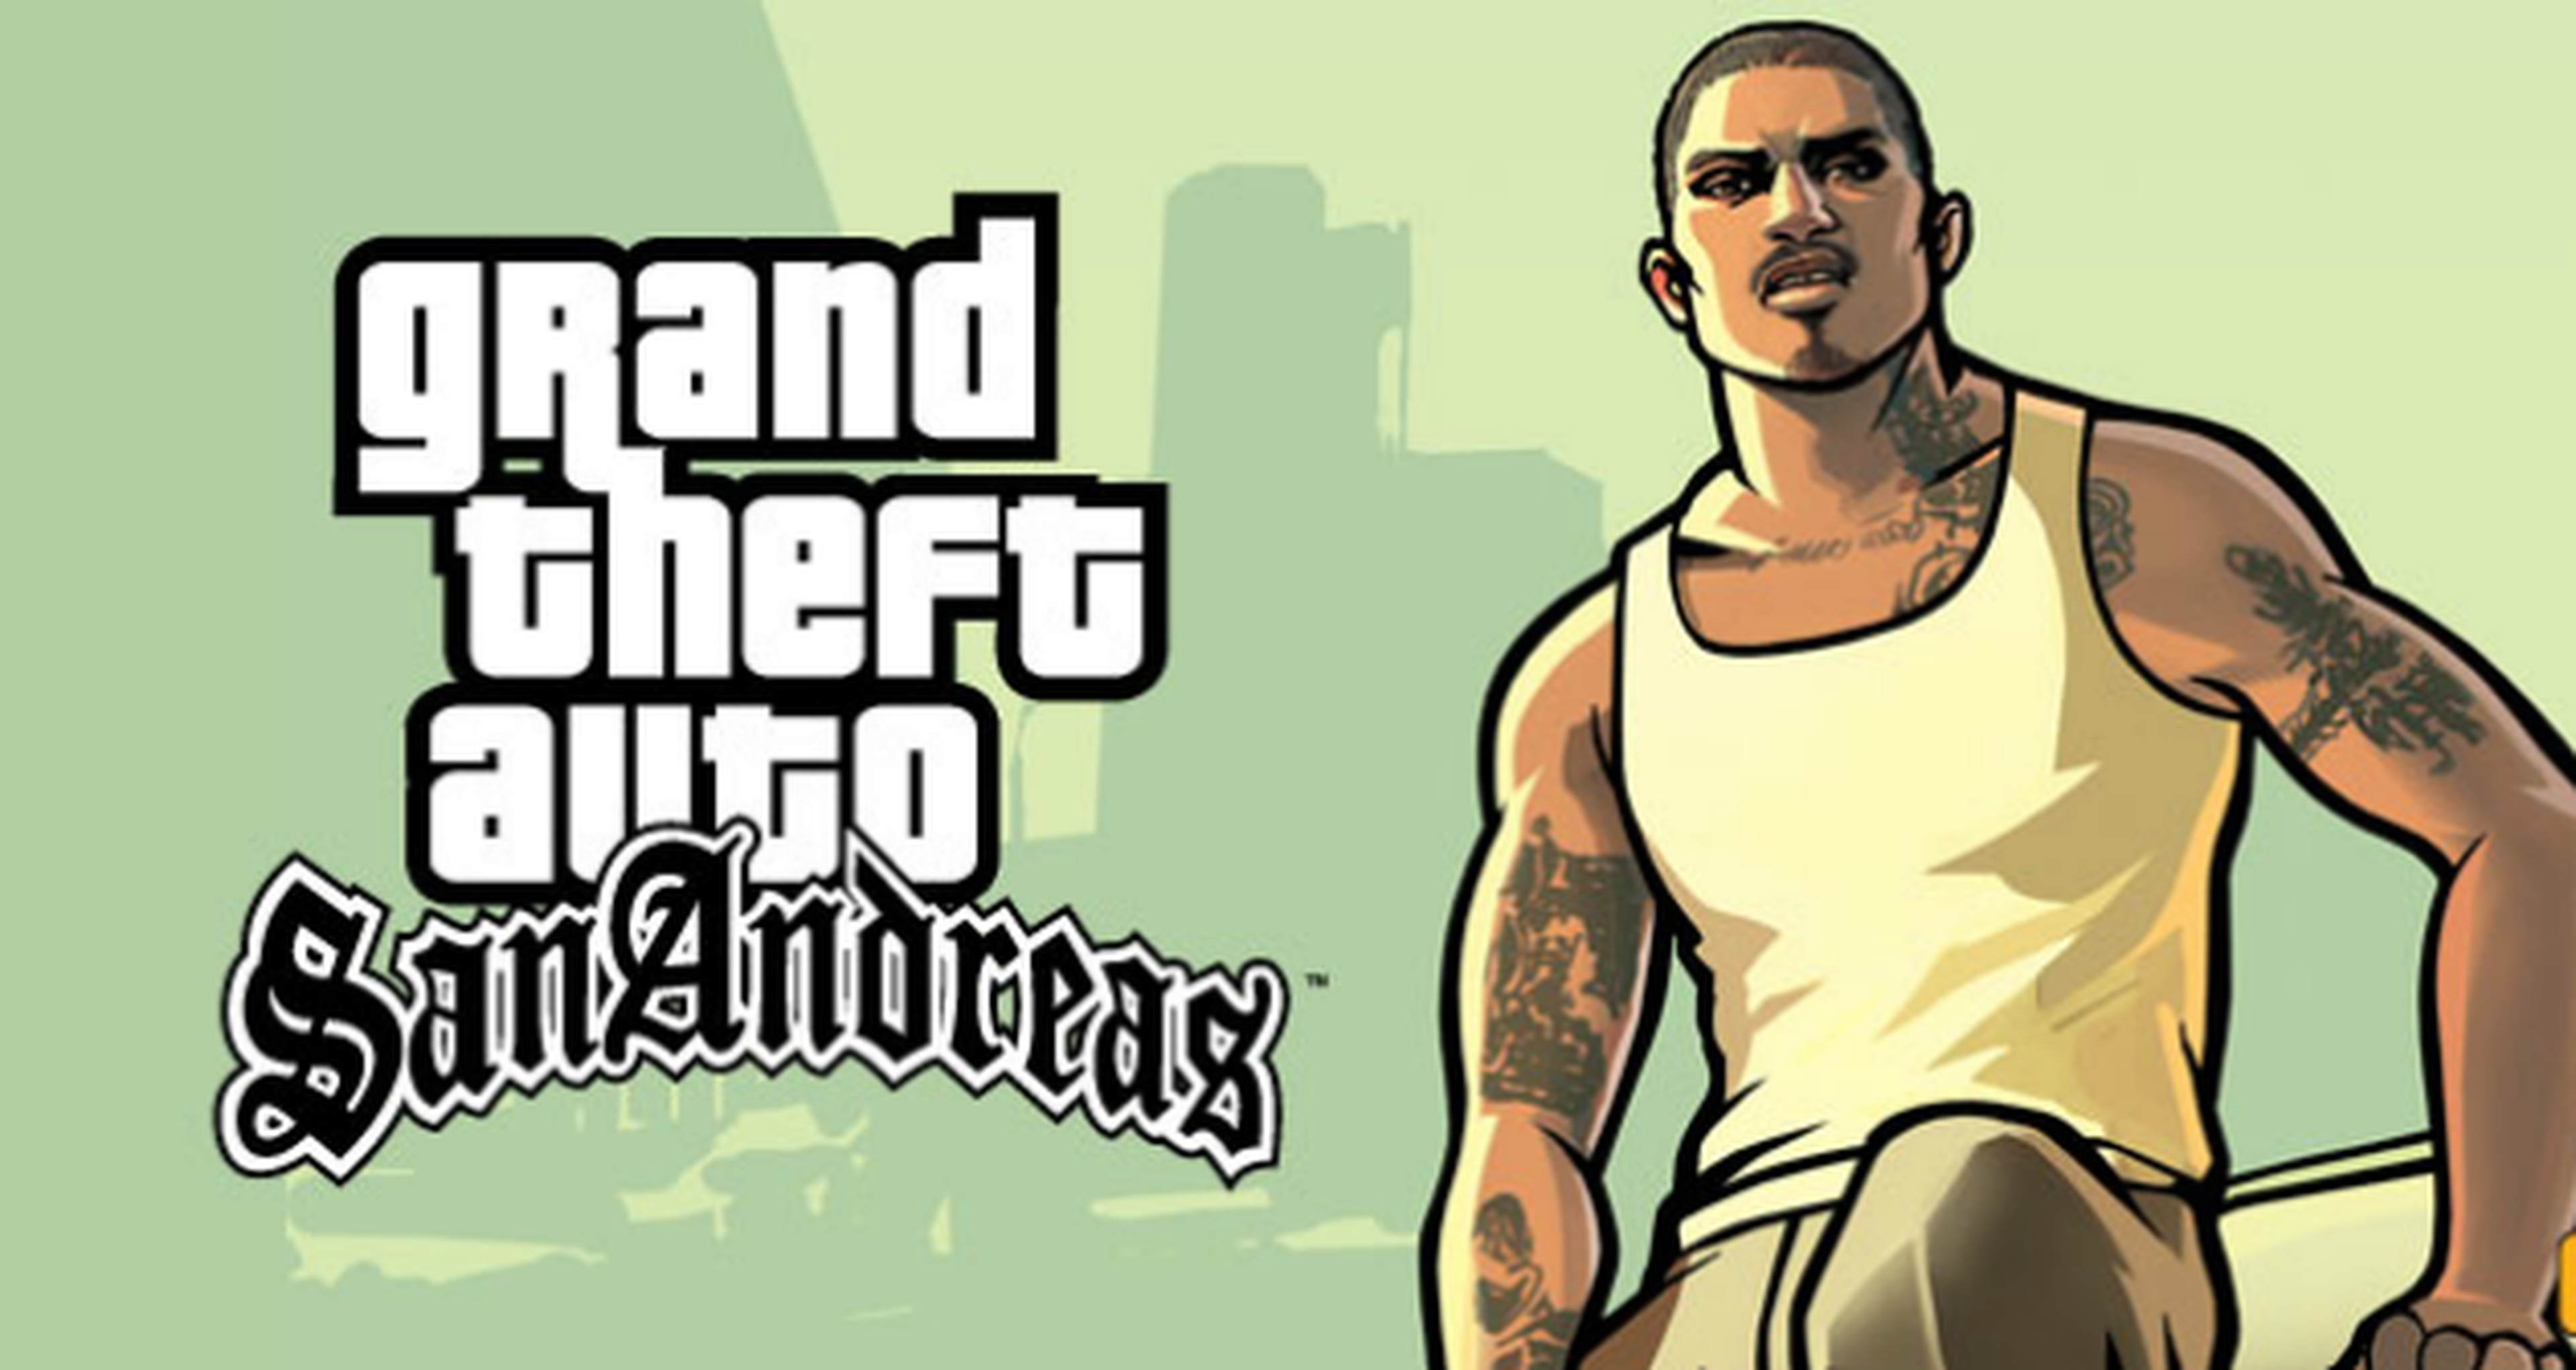 Grand Theft Auto: San Andreas llegará en formato físico a PS3